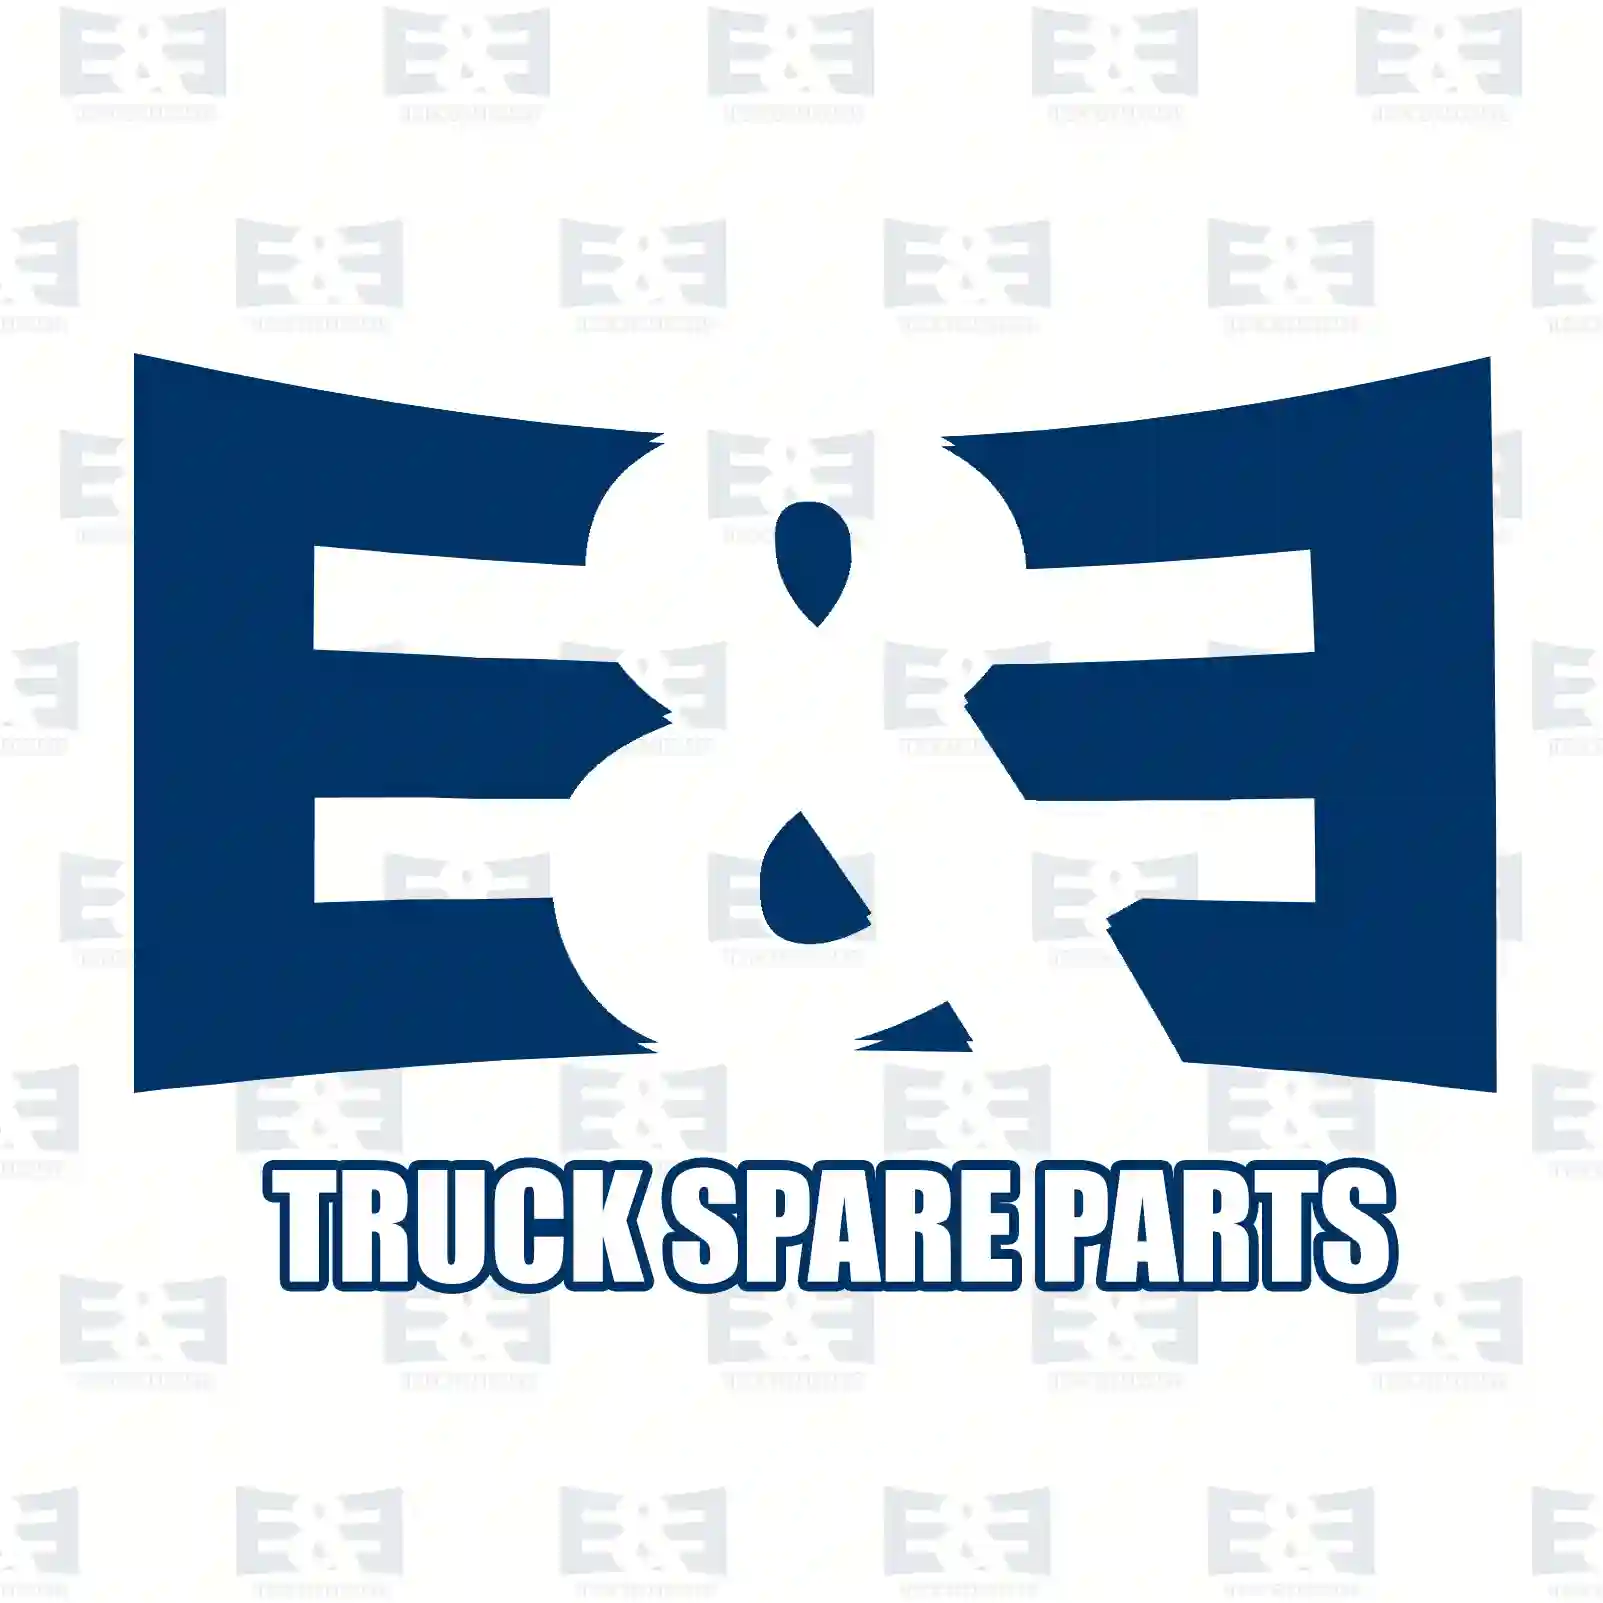 General overhaul kit, 2E2209074, 51009006645 ||  2E2209074 E&E Truck Spare Parts | Truck Spare Parts, Auotomotive Spare Parts General overhaul kit, 2E2209074, 51009006645 ||  2E2209074 E&E Truck Spare Parts | Truck Spare Parts, Auotomotive Spare Parts